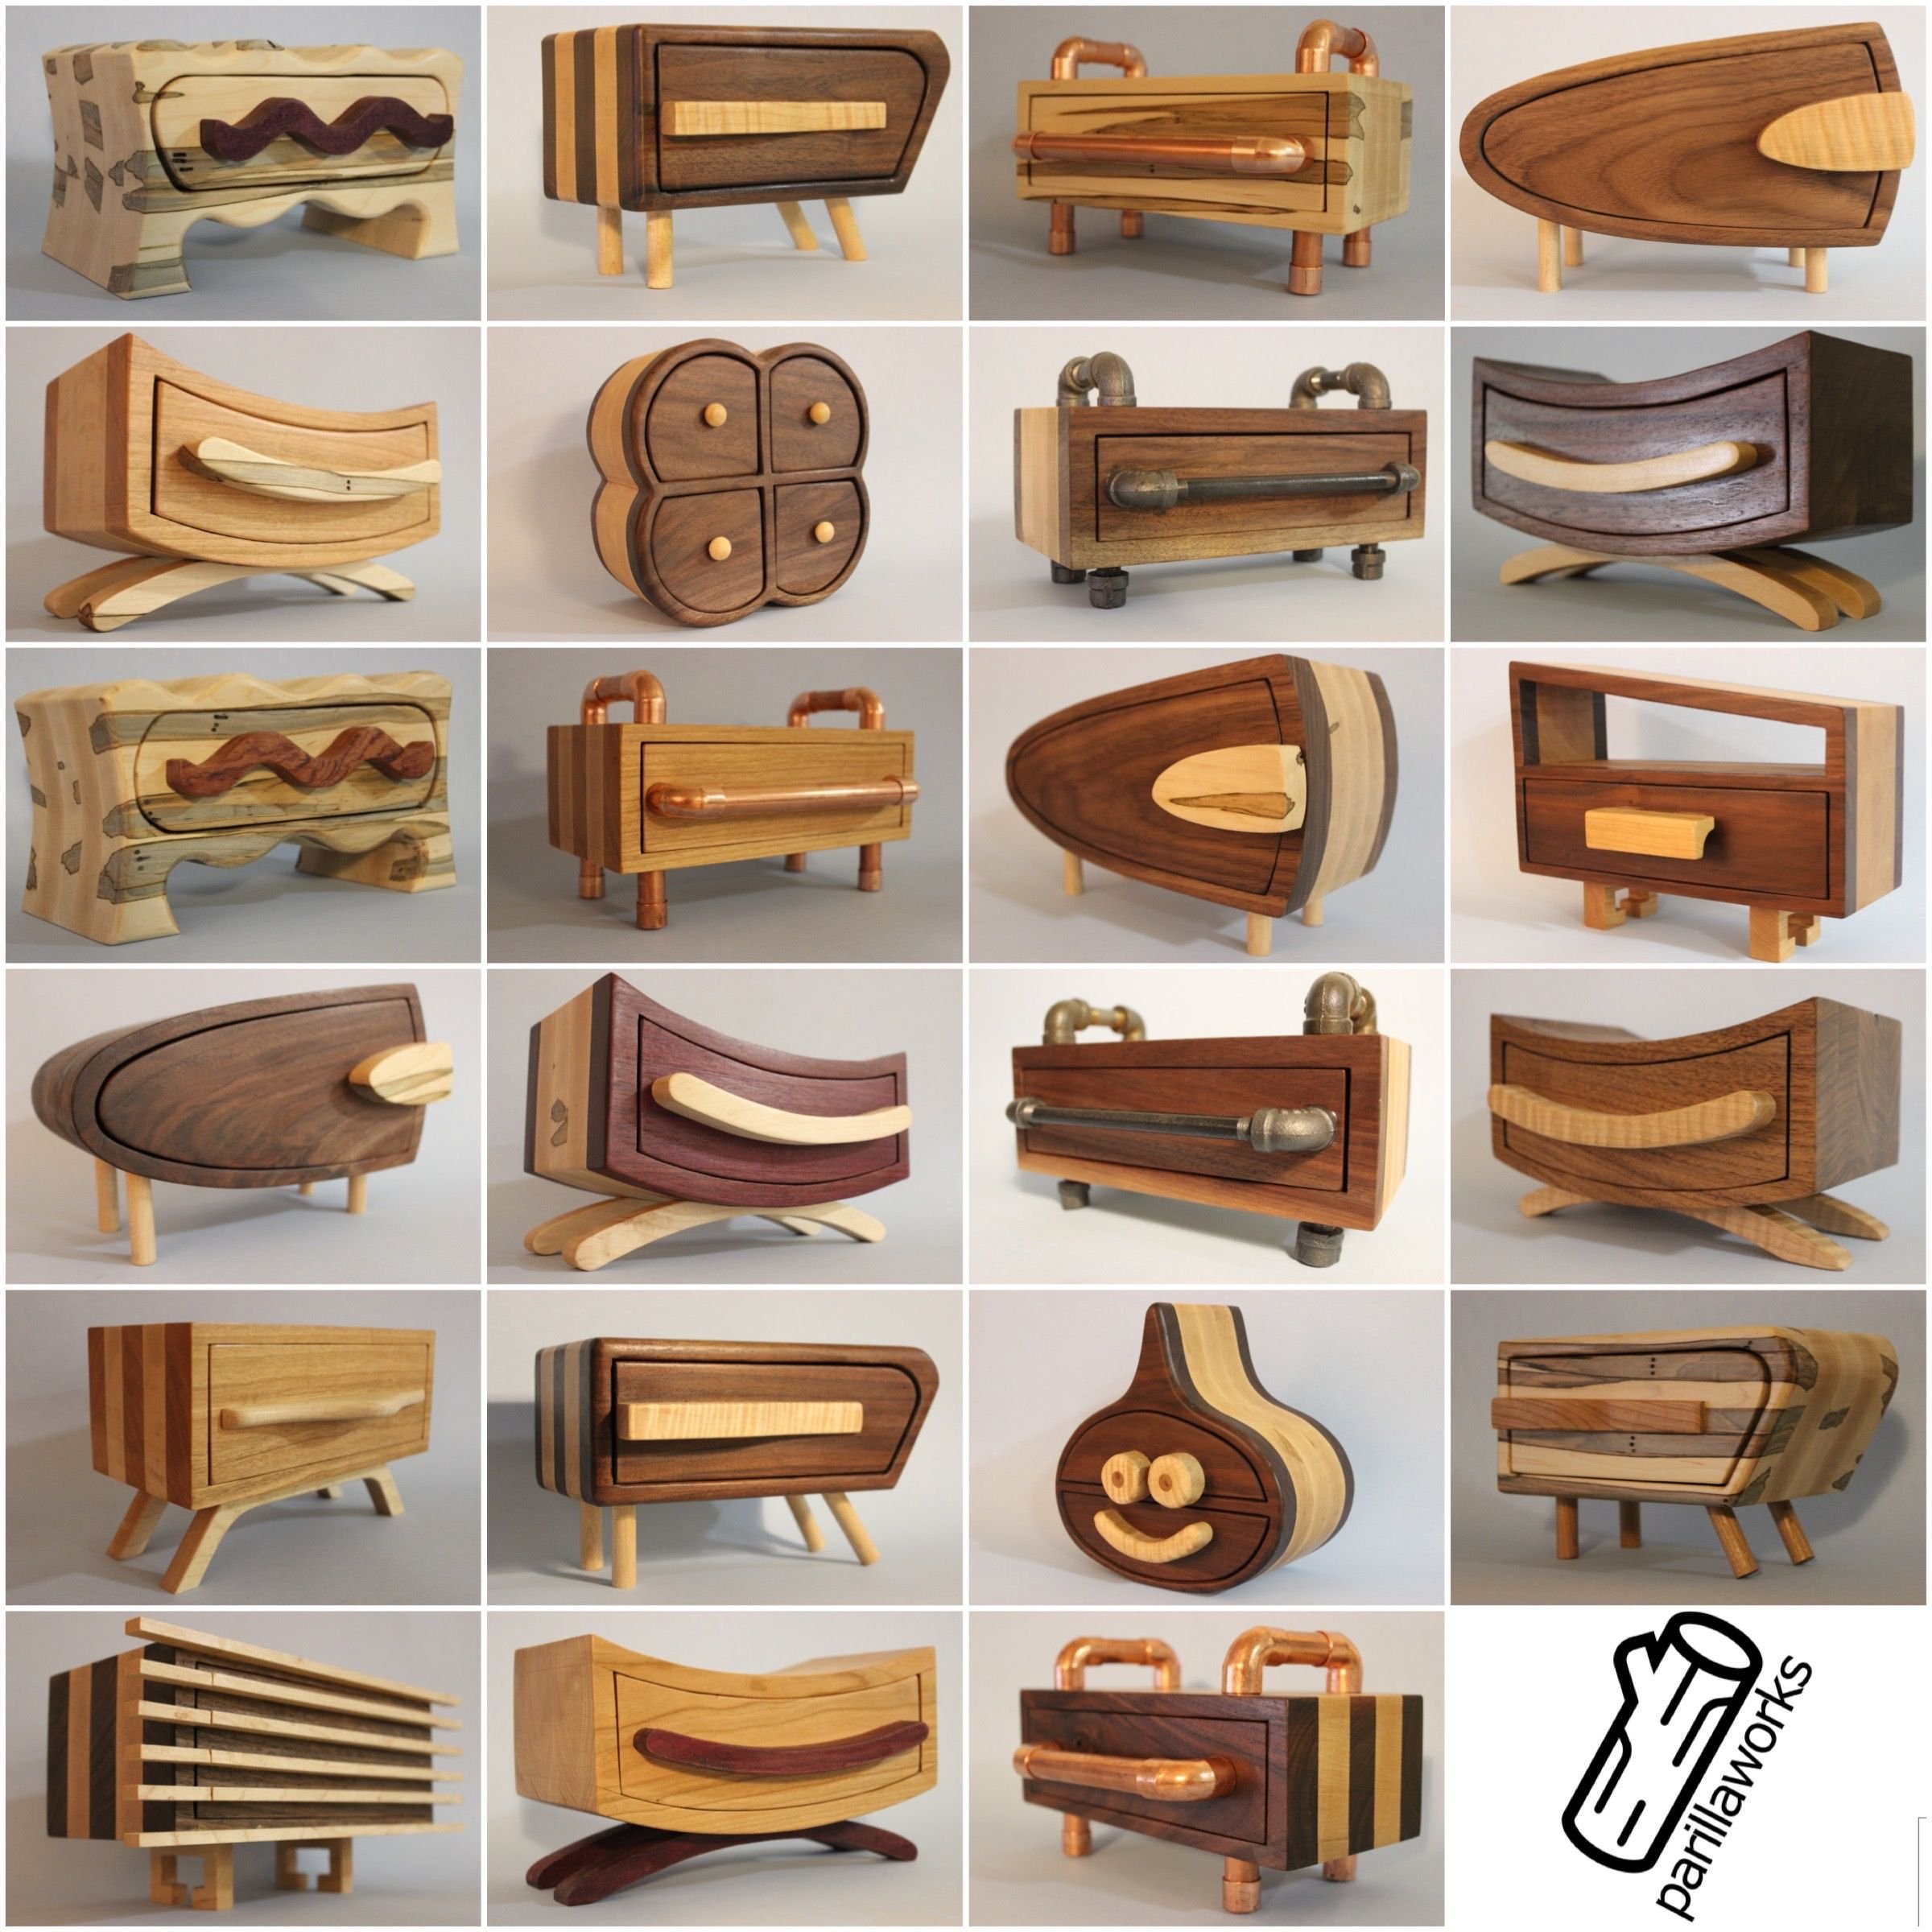 И т д деревянная. Однодетальные изделия из древесины. Интересные деревянные изделия. Столярные изделия из дерева. Оригинальные столярные изделия.